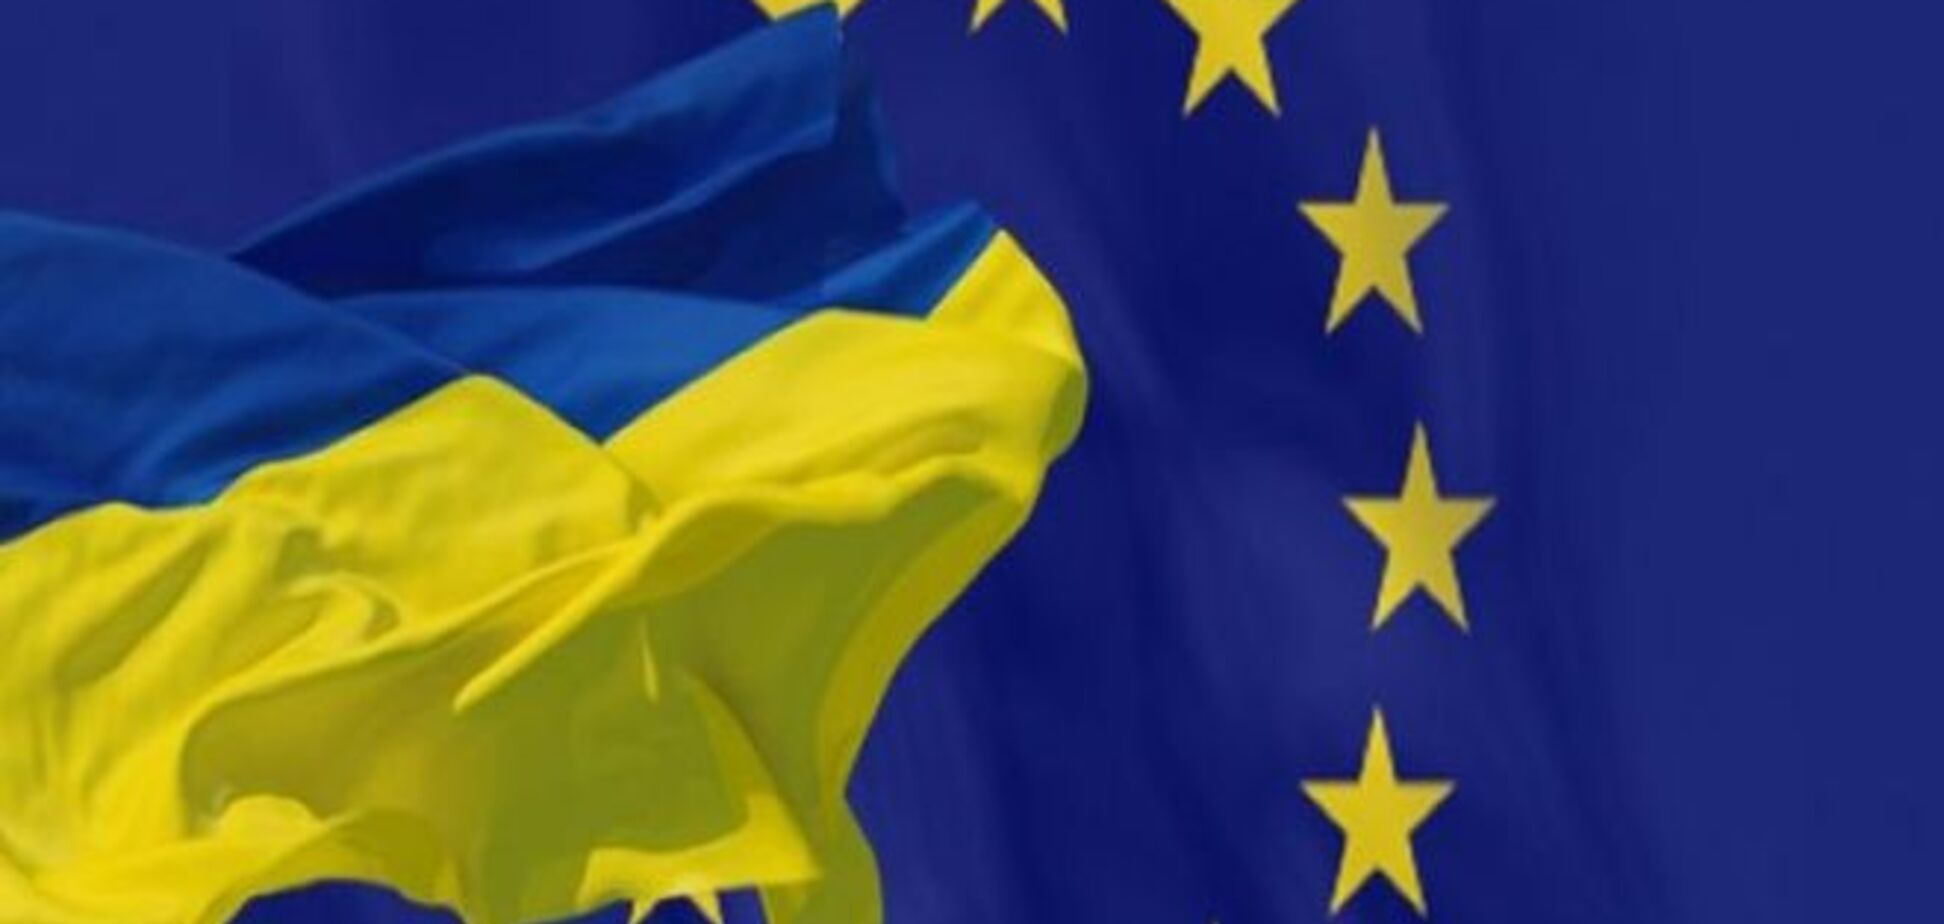 Підписання Угоди про асоціацію з ЄС 27 червня зміцнить суверенітет України - Клімкін